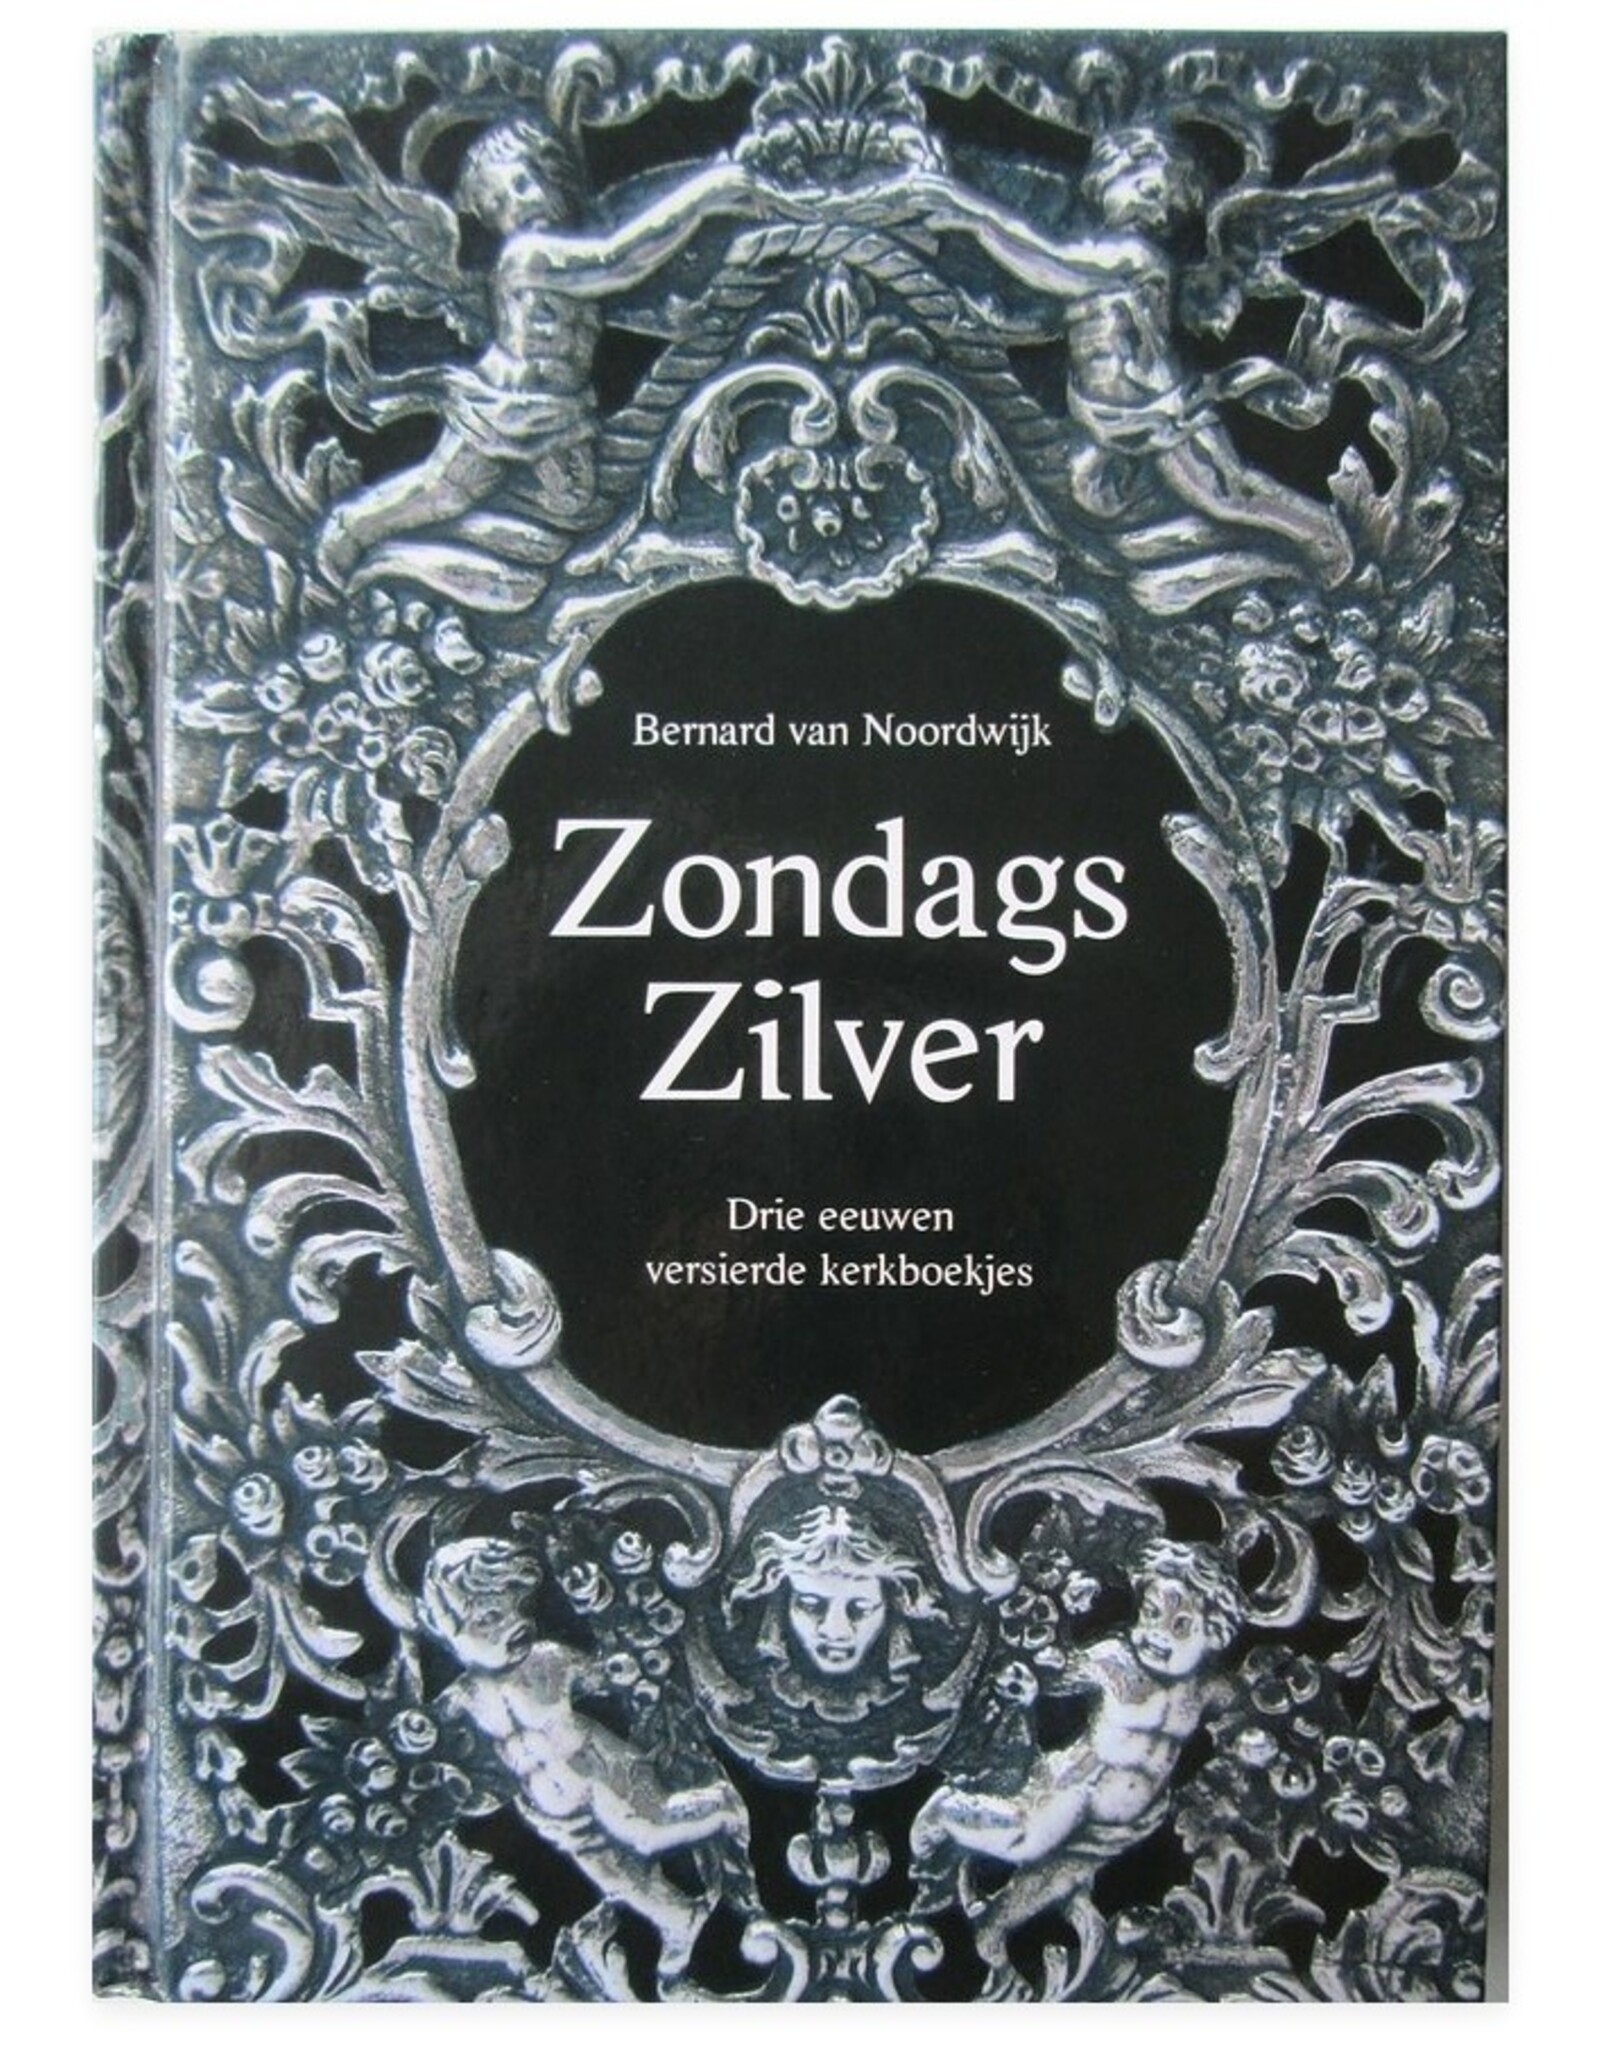 Bernard van Noordwijk - Zondags Zilver. Drie eeuwen versierde kerkboekjes. Met bijdragen van Hermine Pool [en] Jan Storm van Leeuwen